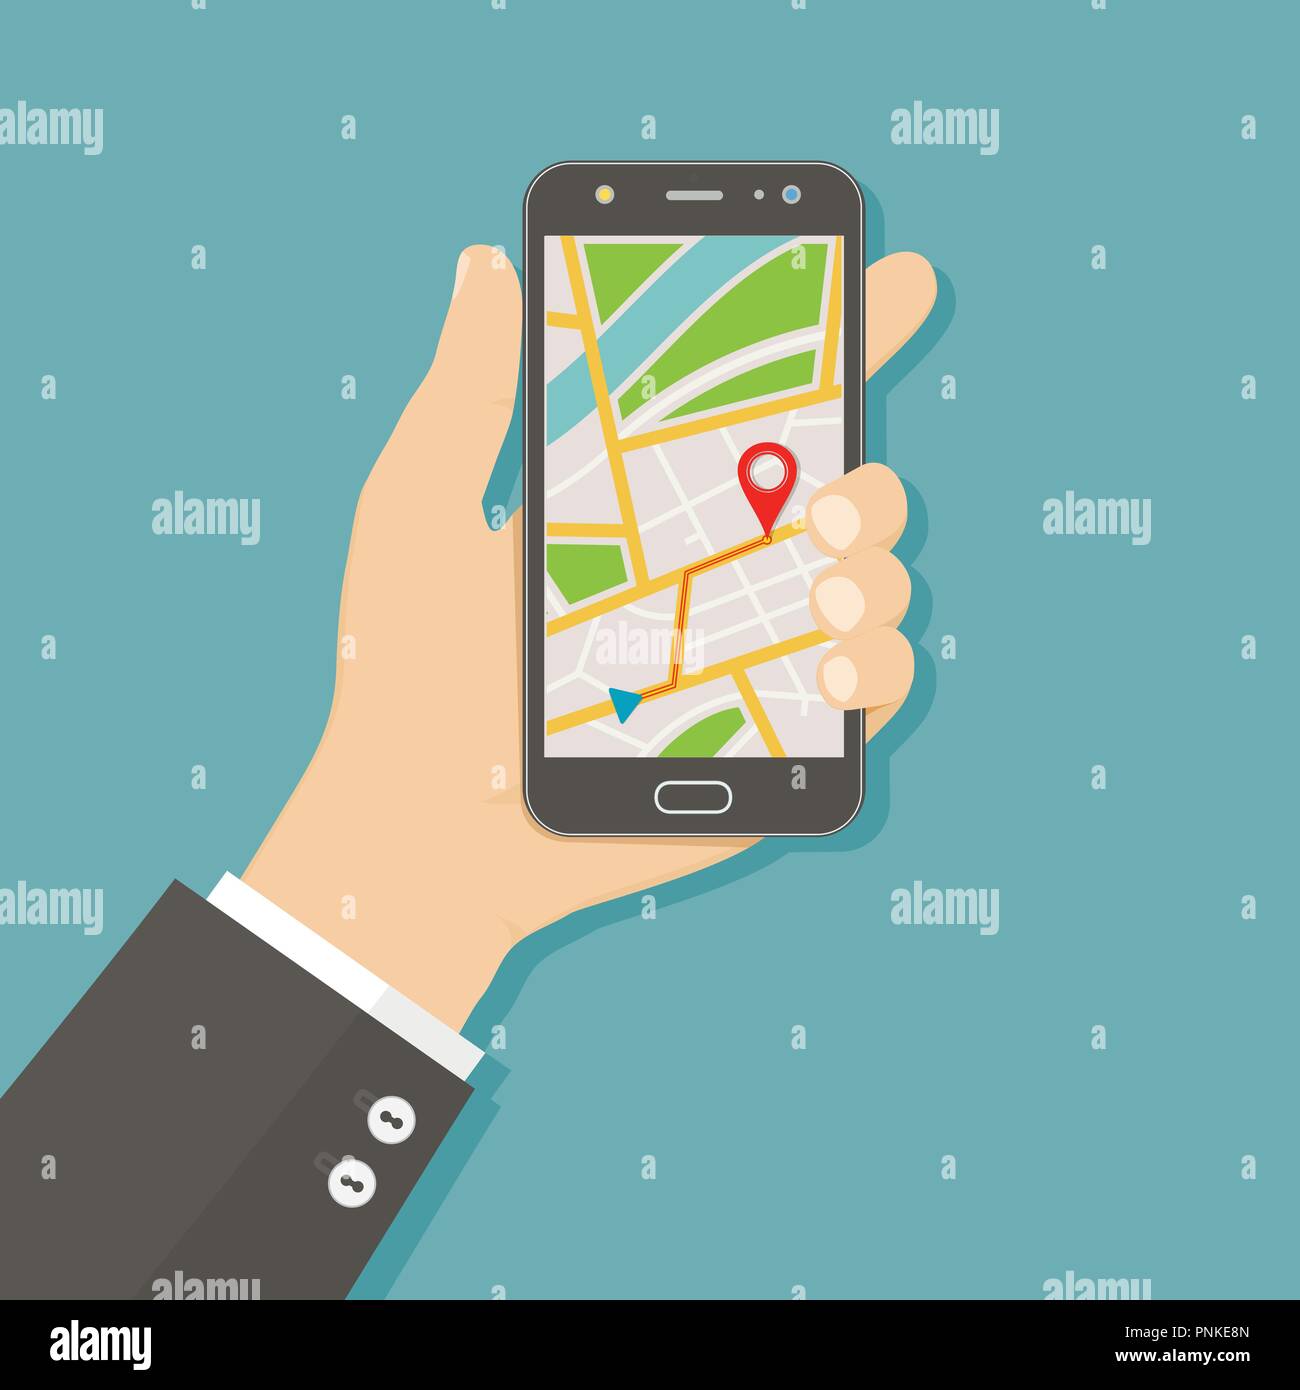 Телефон без базы. Карта на смартфоне. Смартфон с картой на экране. Значок GPS на смартфоне. Смартфон с навигатором силуэт.